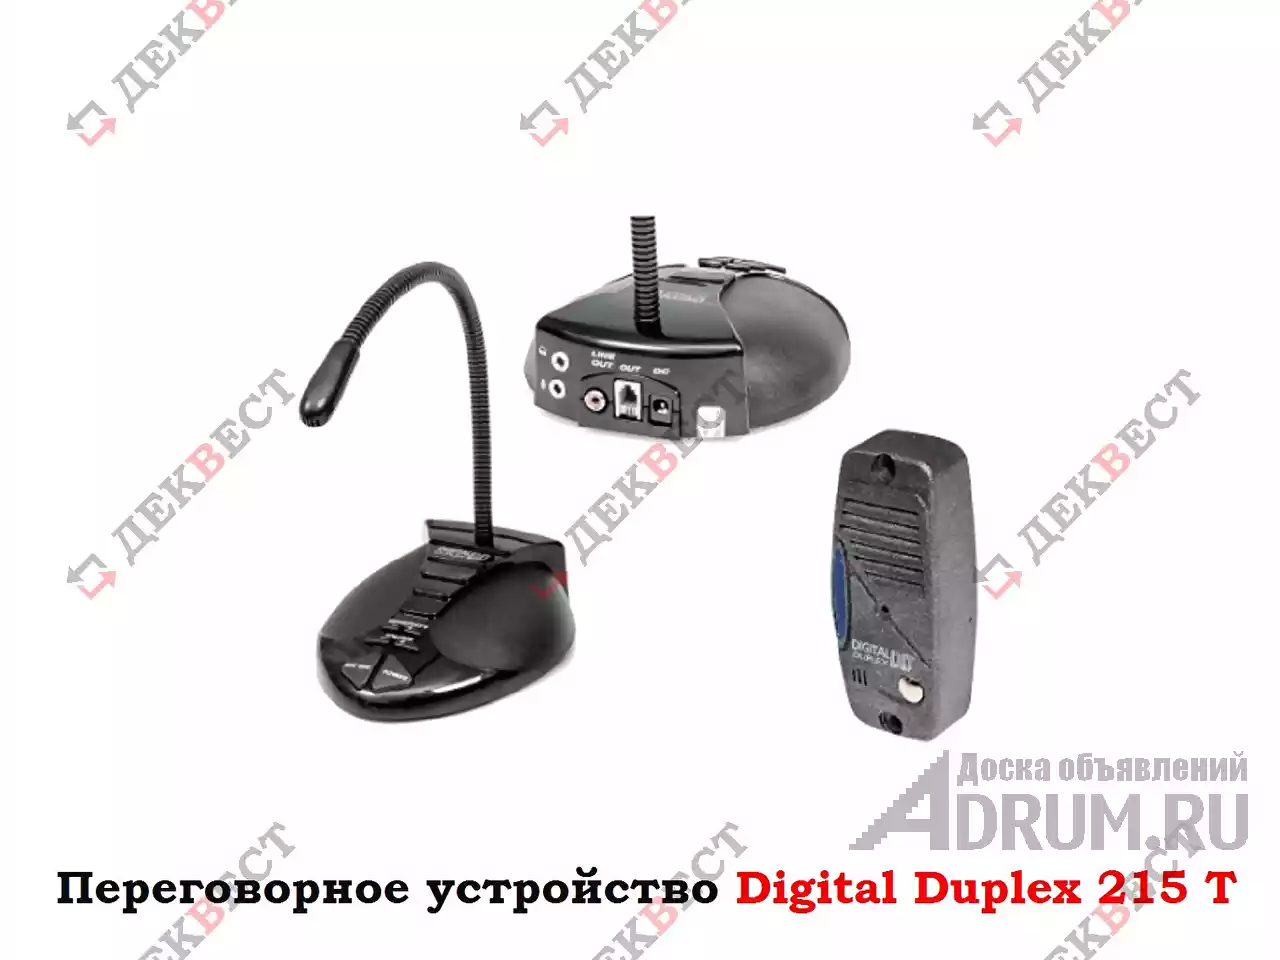 Переговорное устройство Digital Duplex DD-215 Т. в Москвe